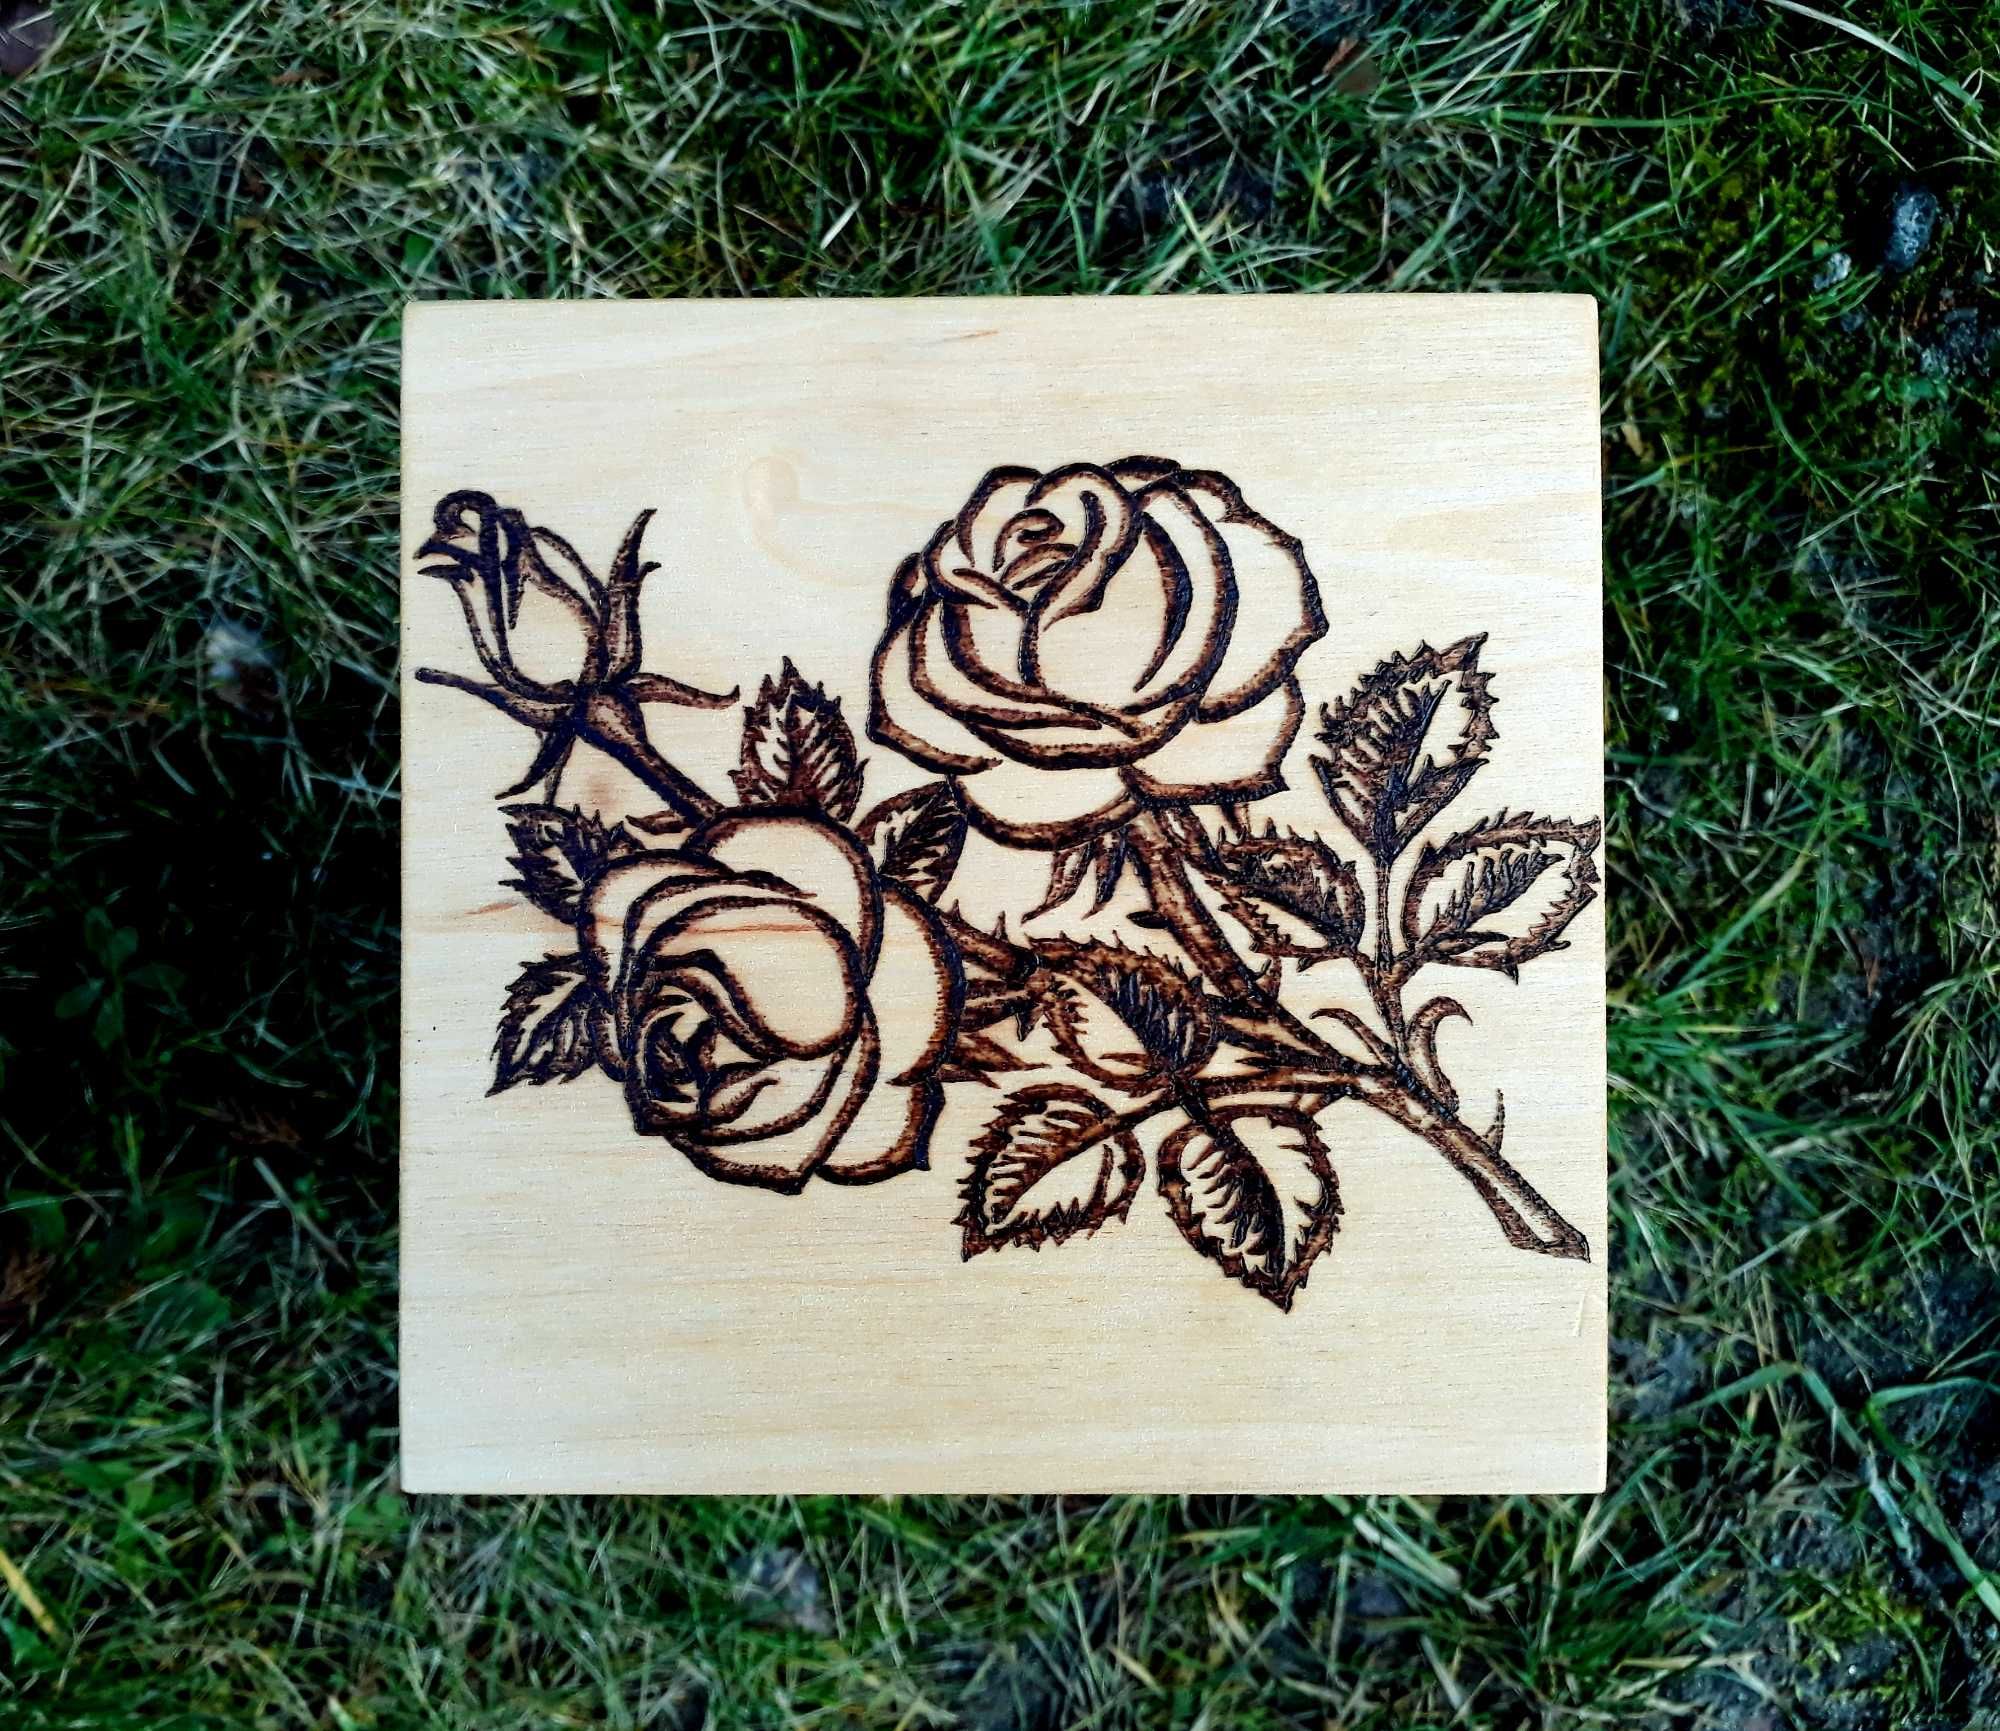 Róża wypalona na drewnie (rękodzieło): pirografia oryginalny prezent!